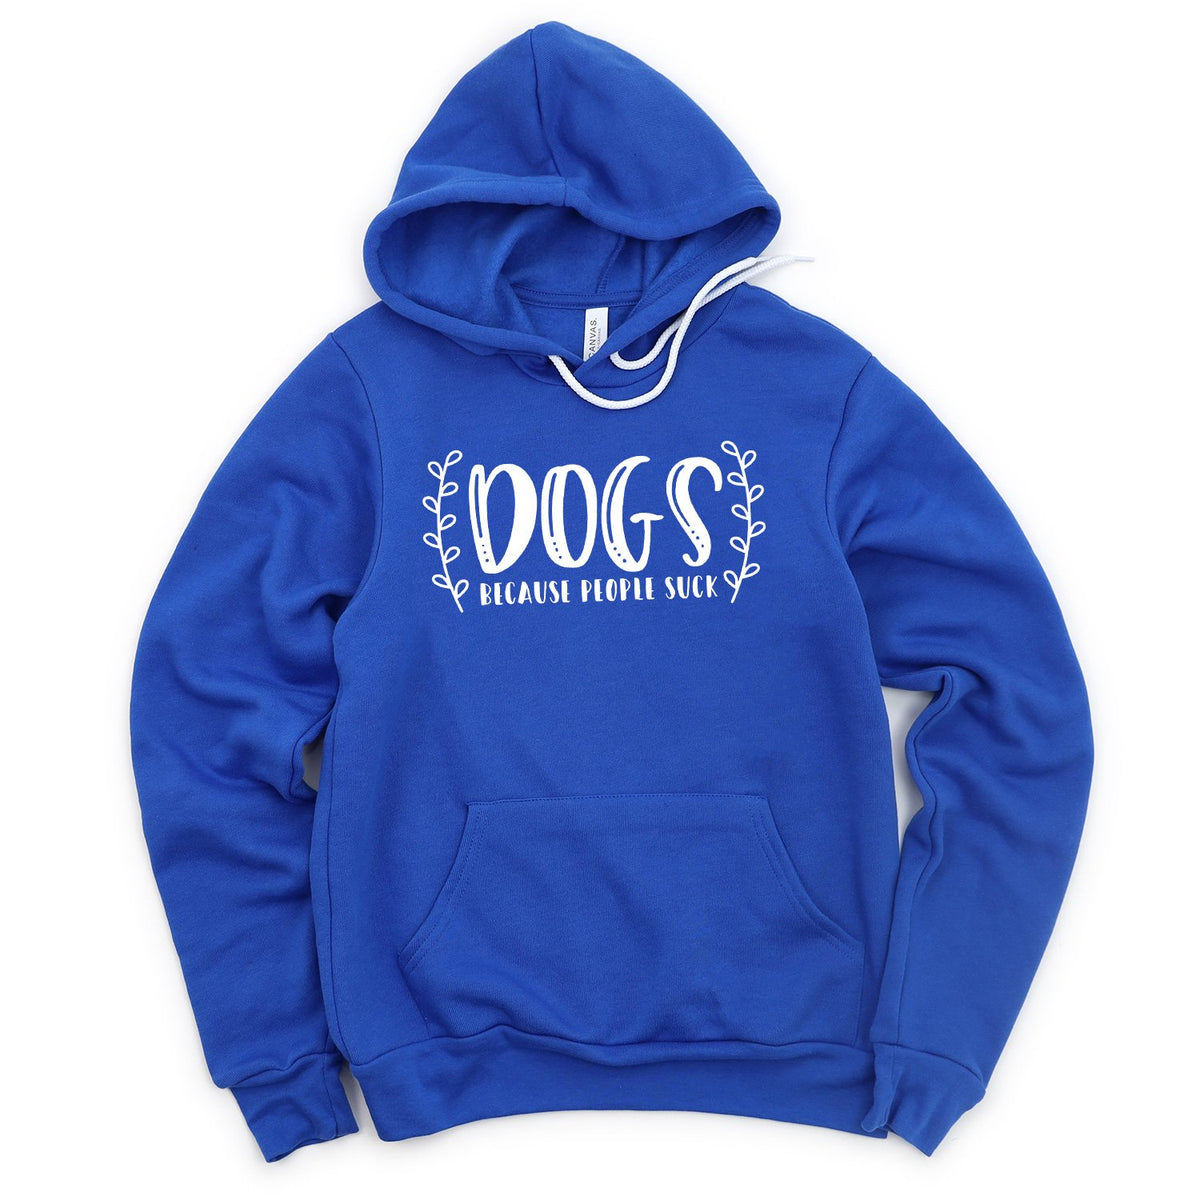 DOGS Because People Suck - Hoodie Sweatshirt